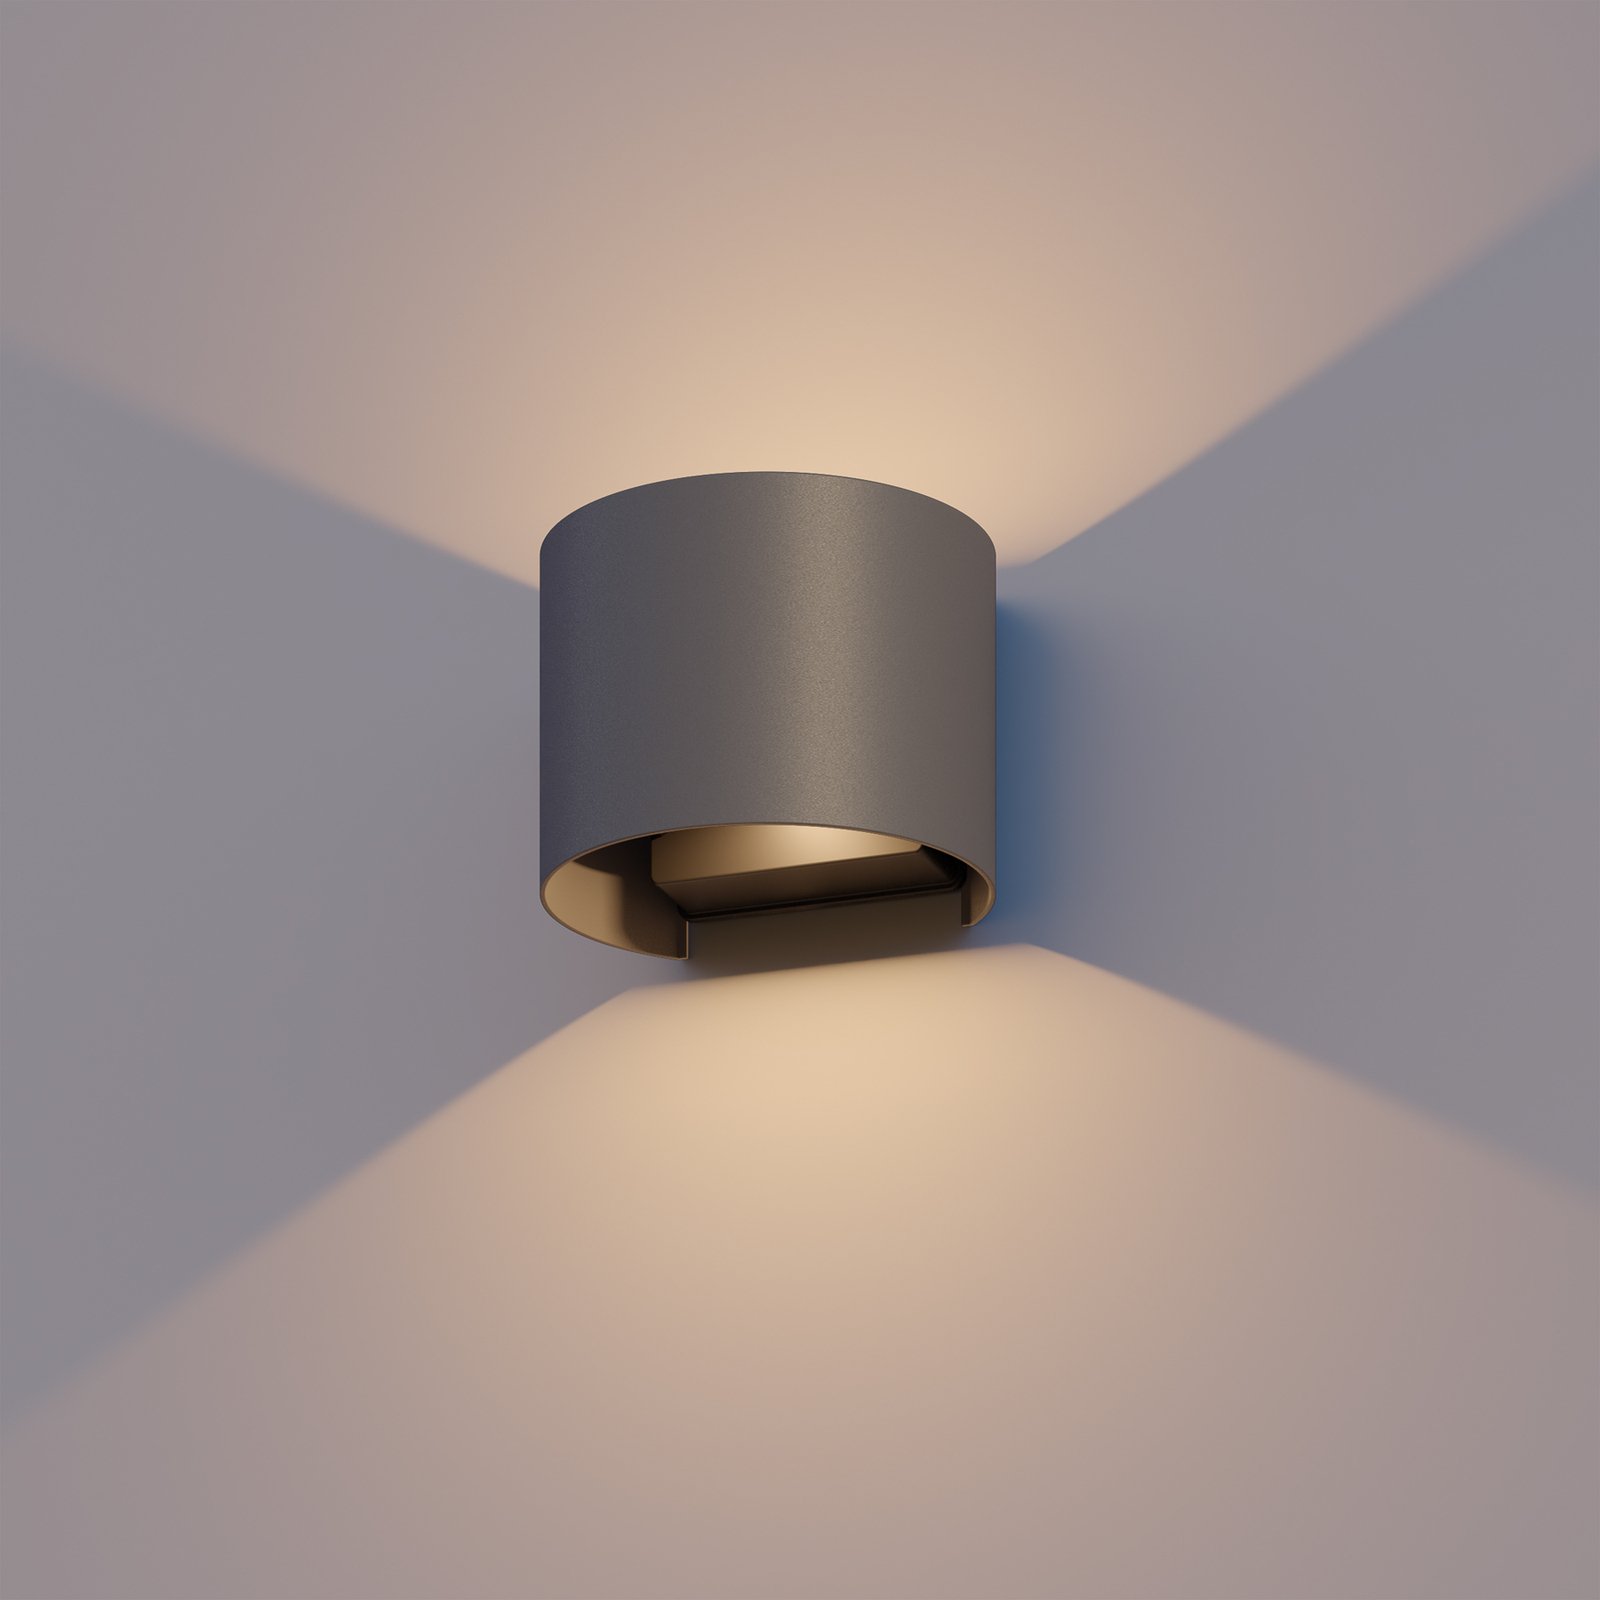 Kinkiet zewnętrzny LED Calex Oval, Up/Down, wysokość 10cm, antracytowy